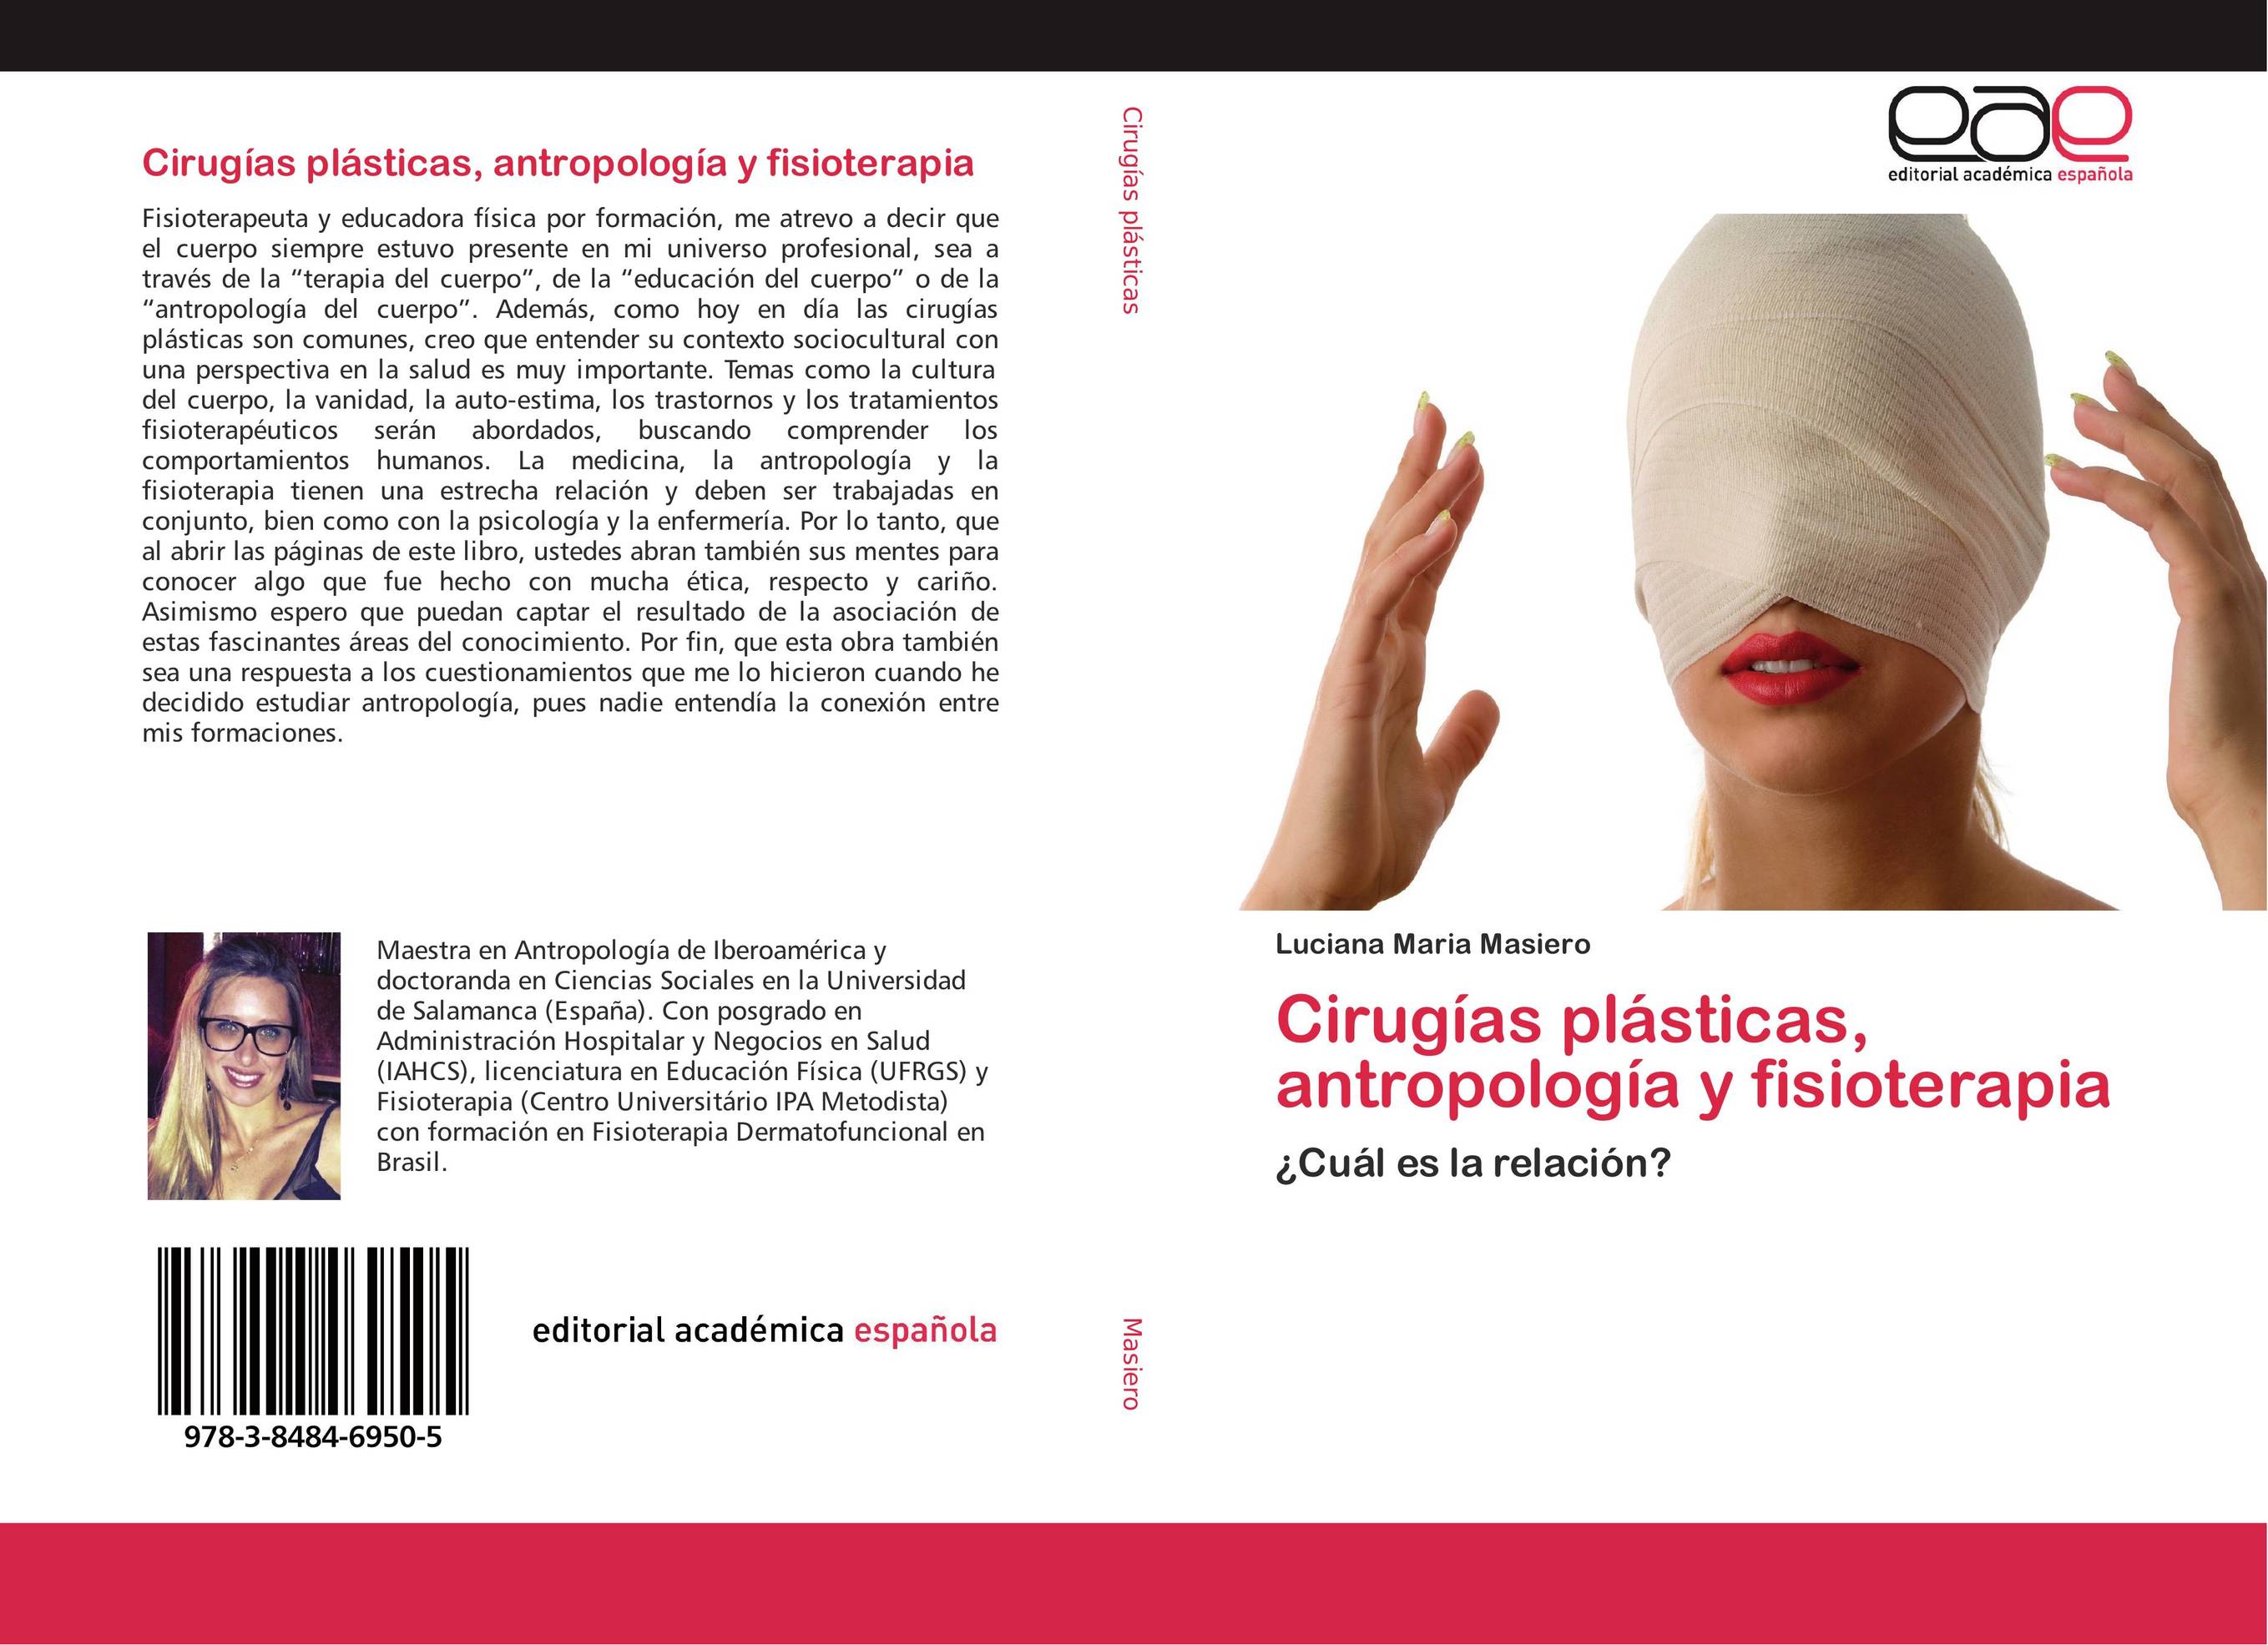 Cirugías plásticas, antropología y fisioterapia